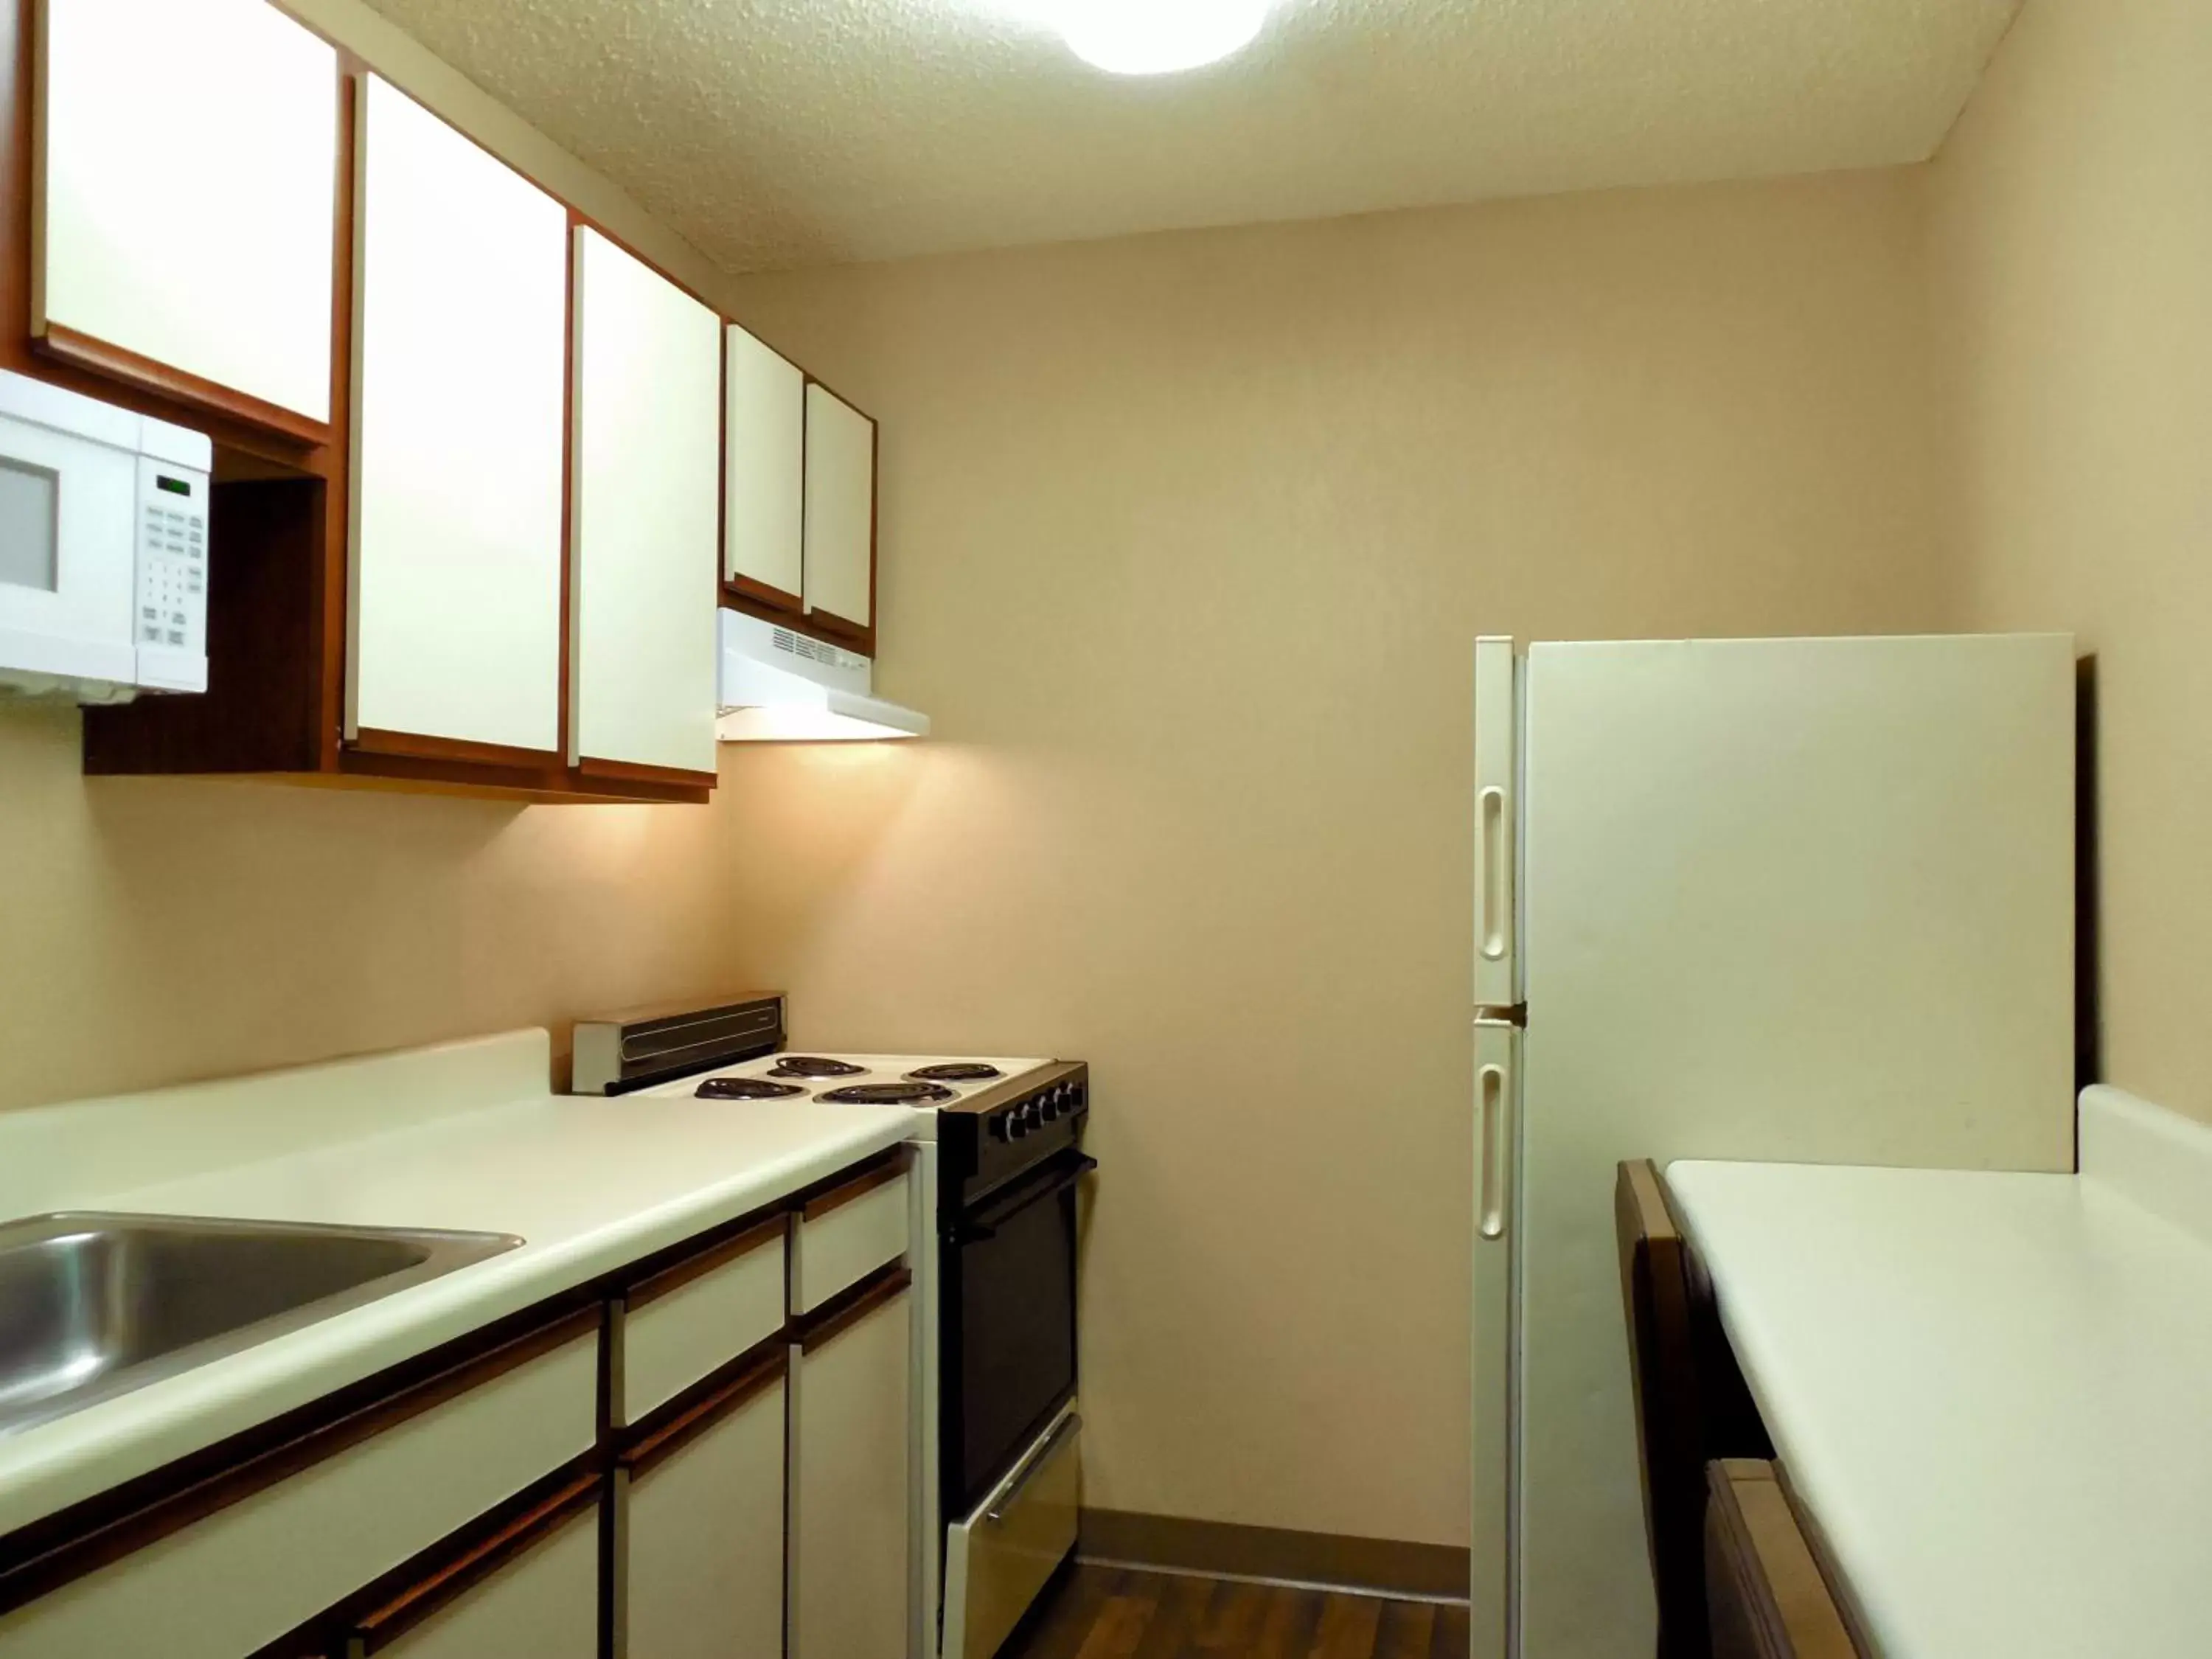 Kitchen or kitchenette, Kitchen/Kitchenette in Extended Stay America Suites - Tampa - Airport - Memorial Hwy